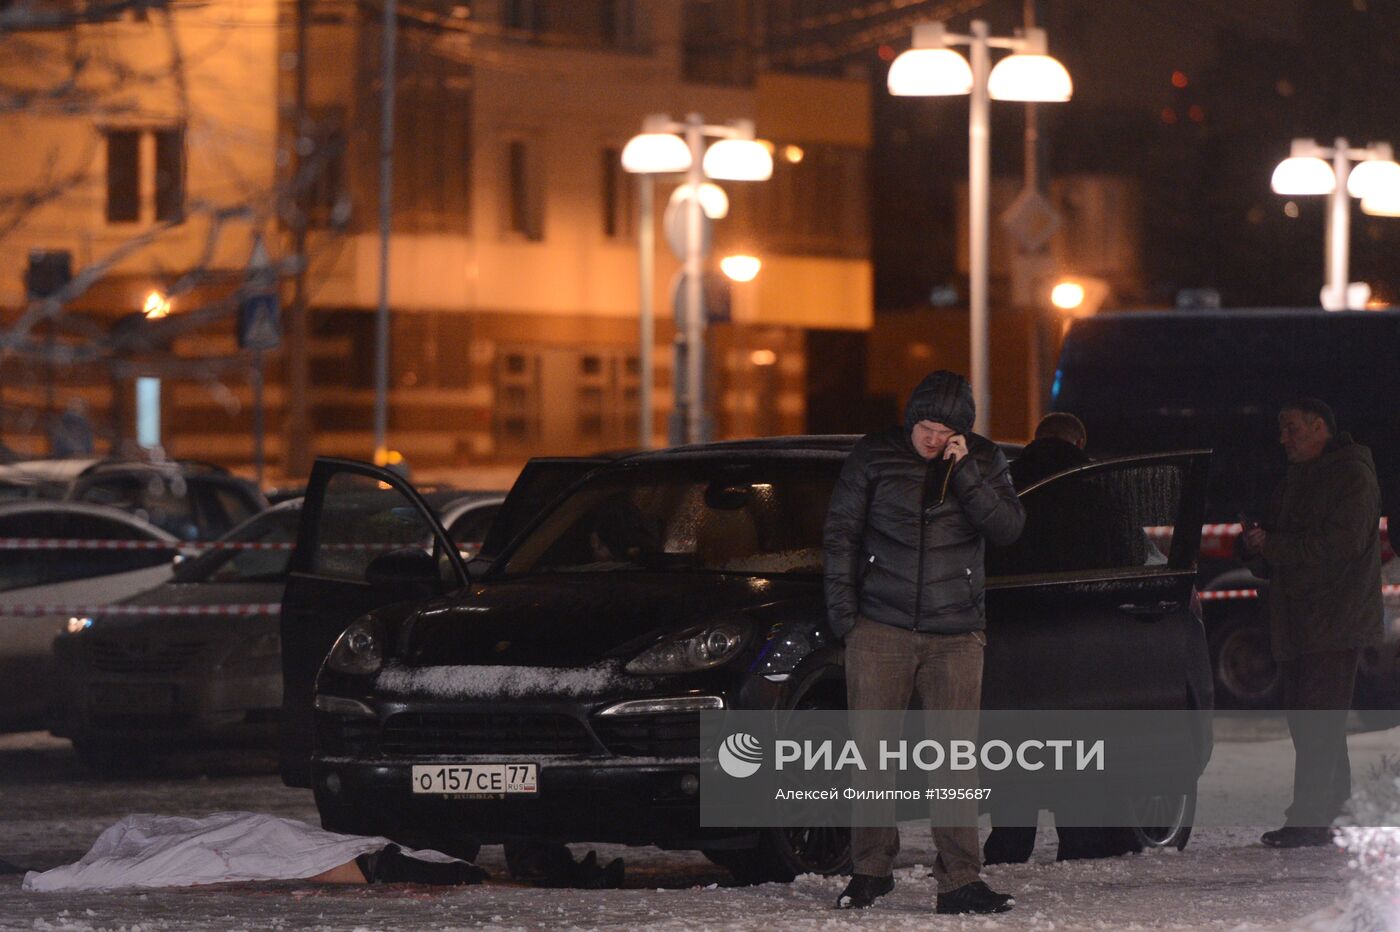 Неизвестного мужчину застрелили на юго-западе Москвы